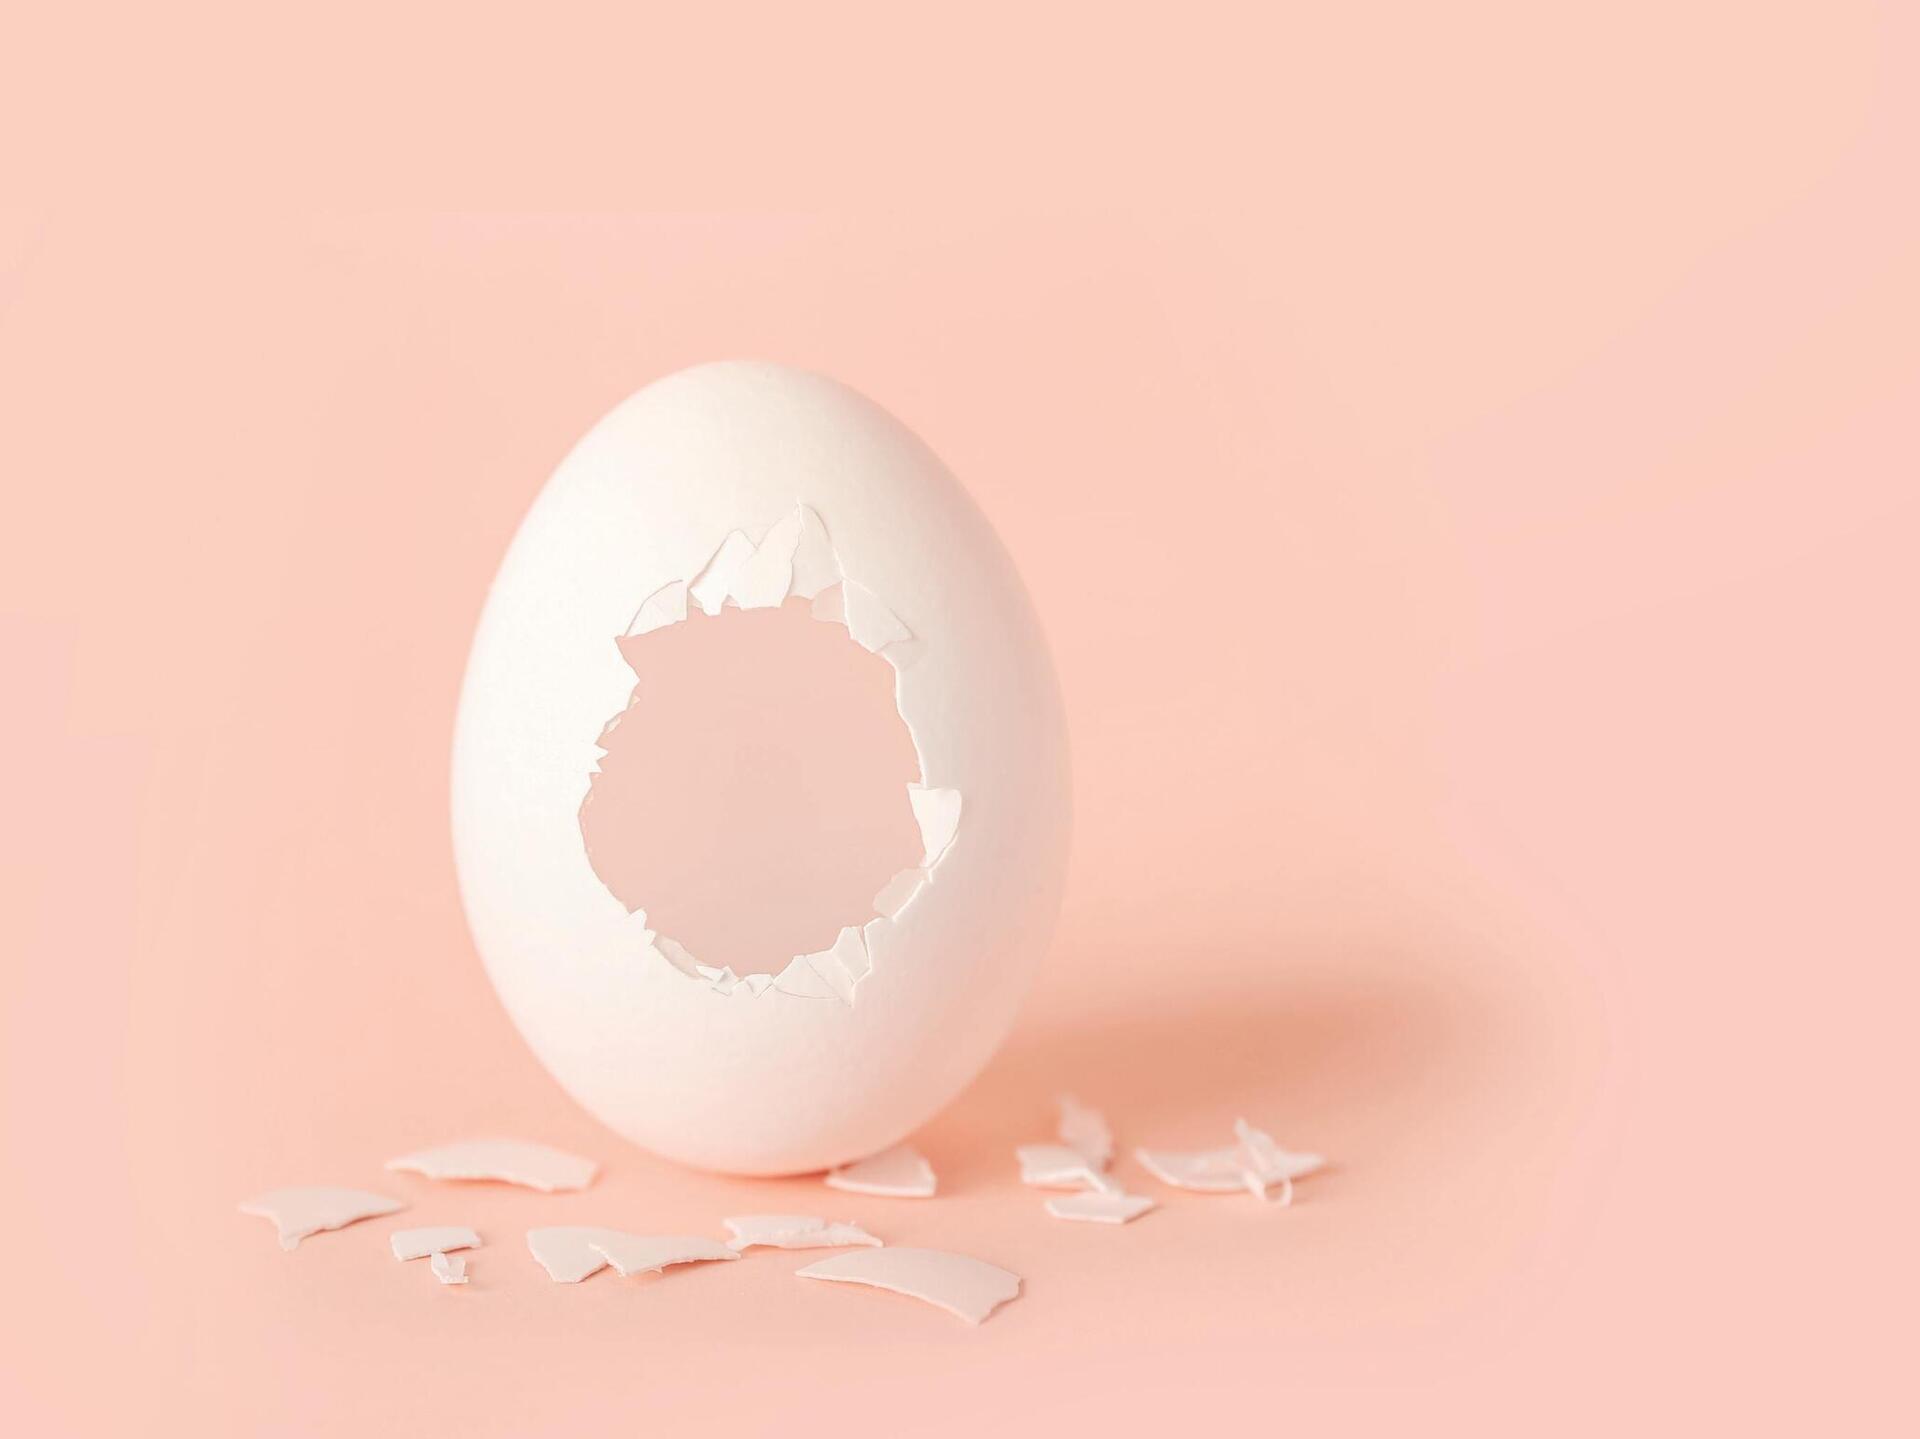 חצי קליפת ביצה יכולה לספק את קצובת הסידן היומית